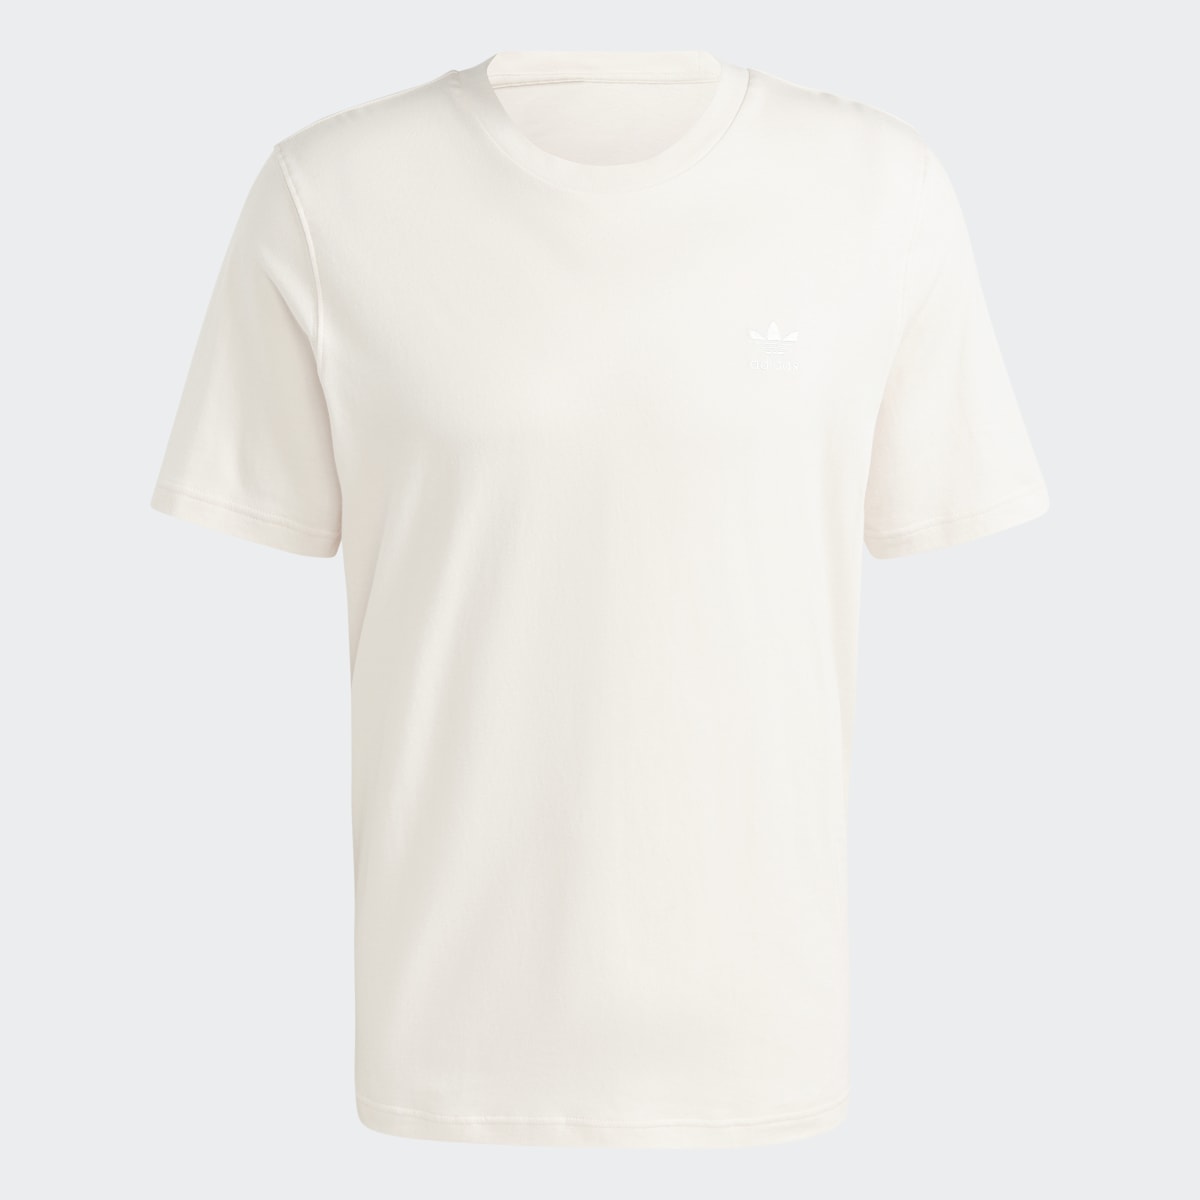 Adidas Camiseta Trefoil Essentials. 5